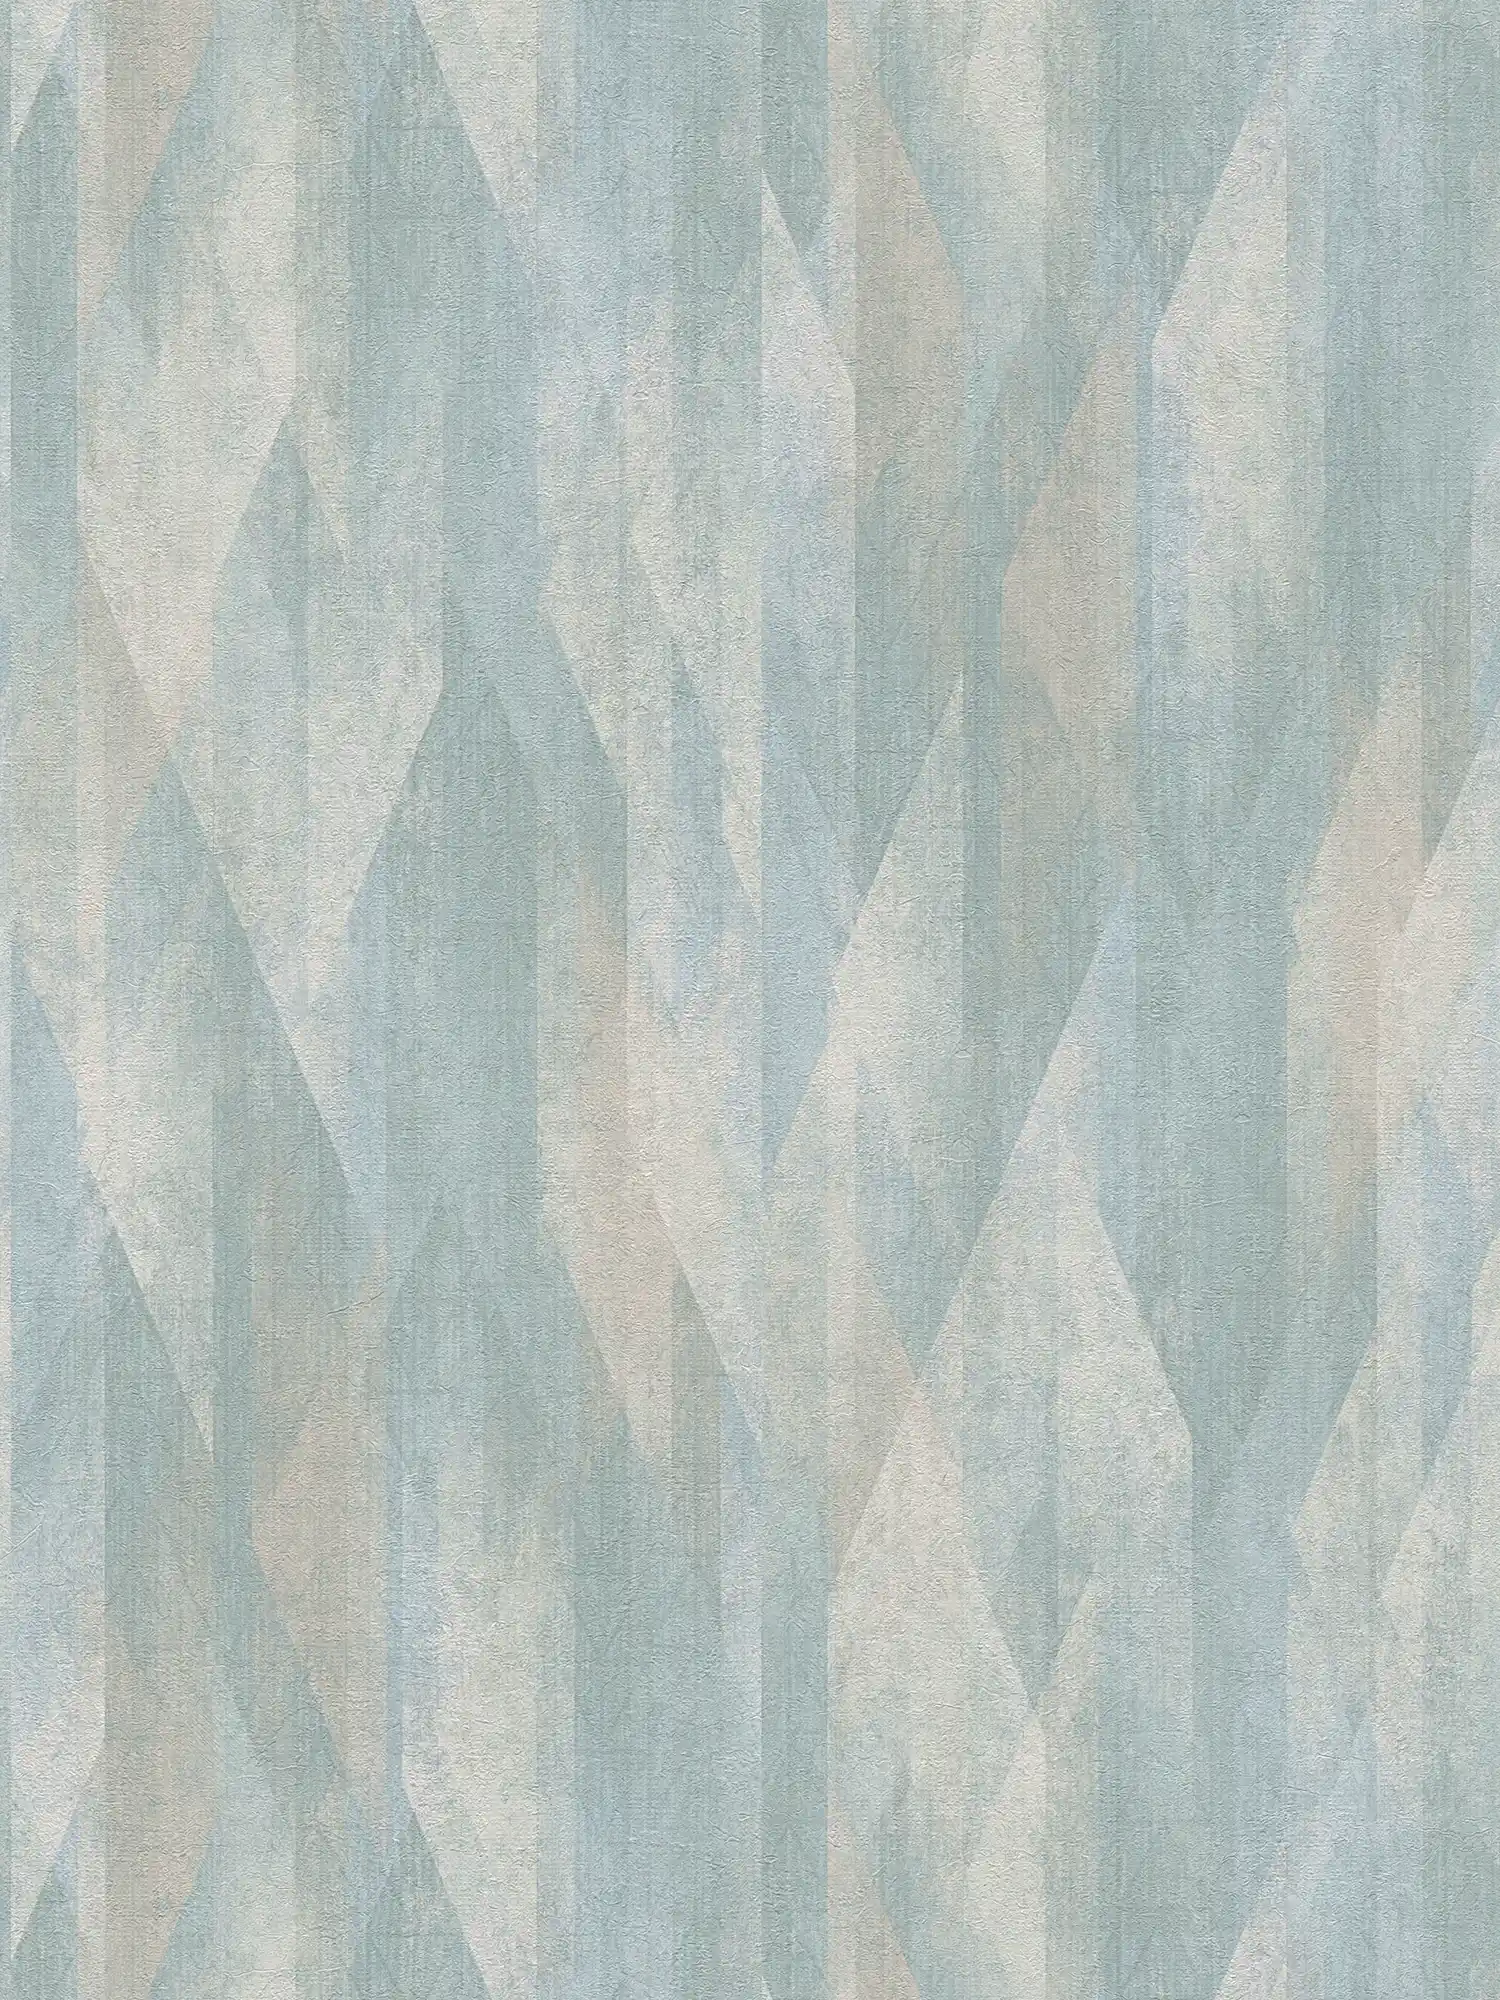 Patroonbehang met grafische ruitjes - turkoois, blauw, crème
